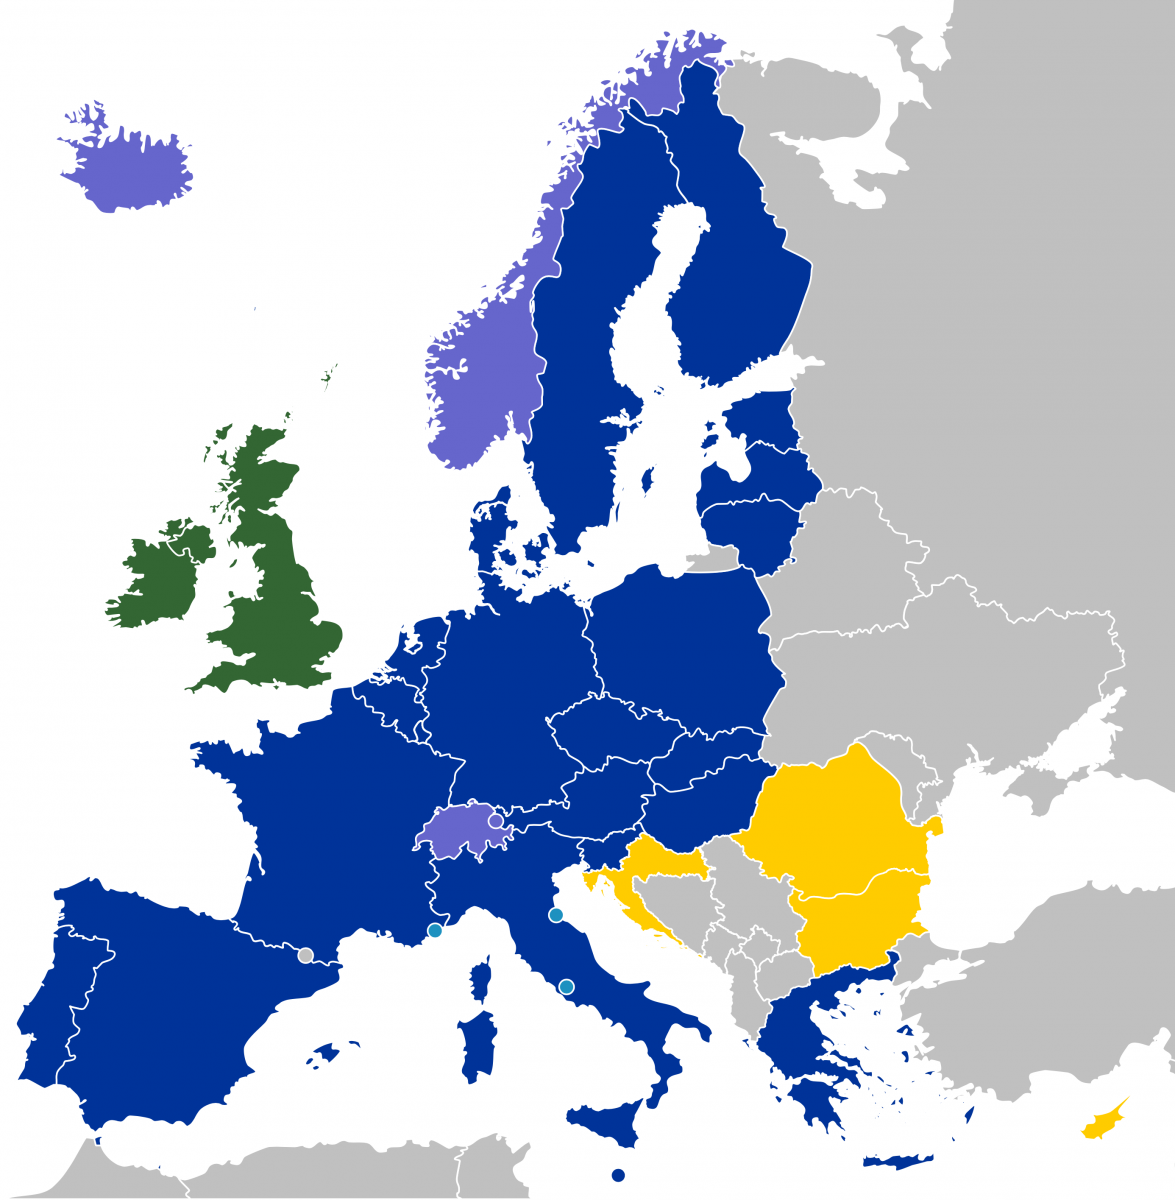 Horvátország január elsején csatlakozott, sőt az eurót is bevezette, míg Románia és Bulgária továbbra is várólistás. | Forrás: Wikipédia